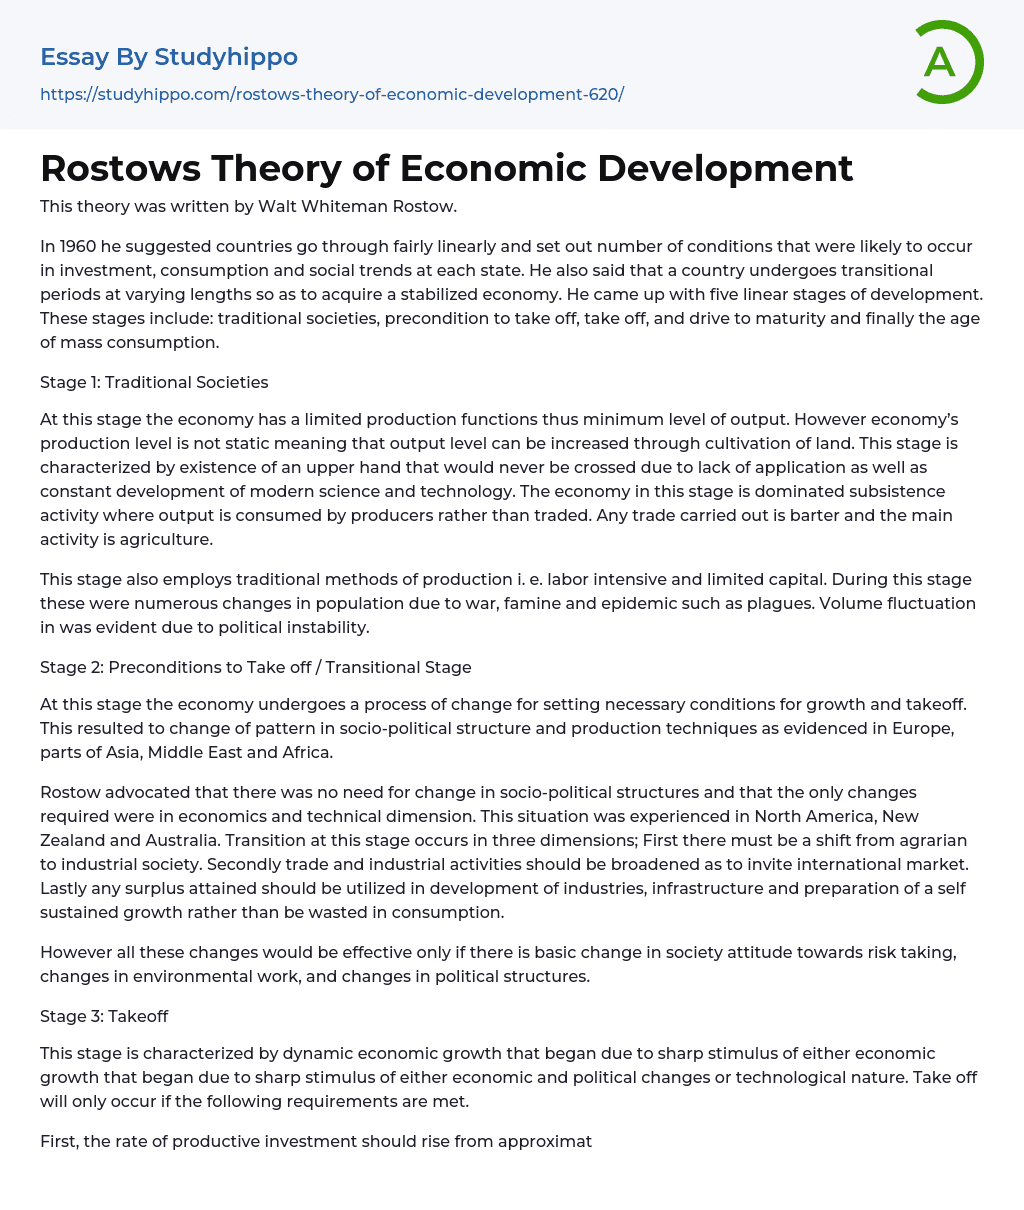 Rostows Theory of Economic Development Essay Example